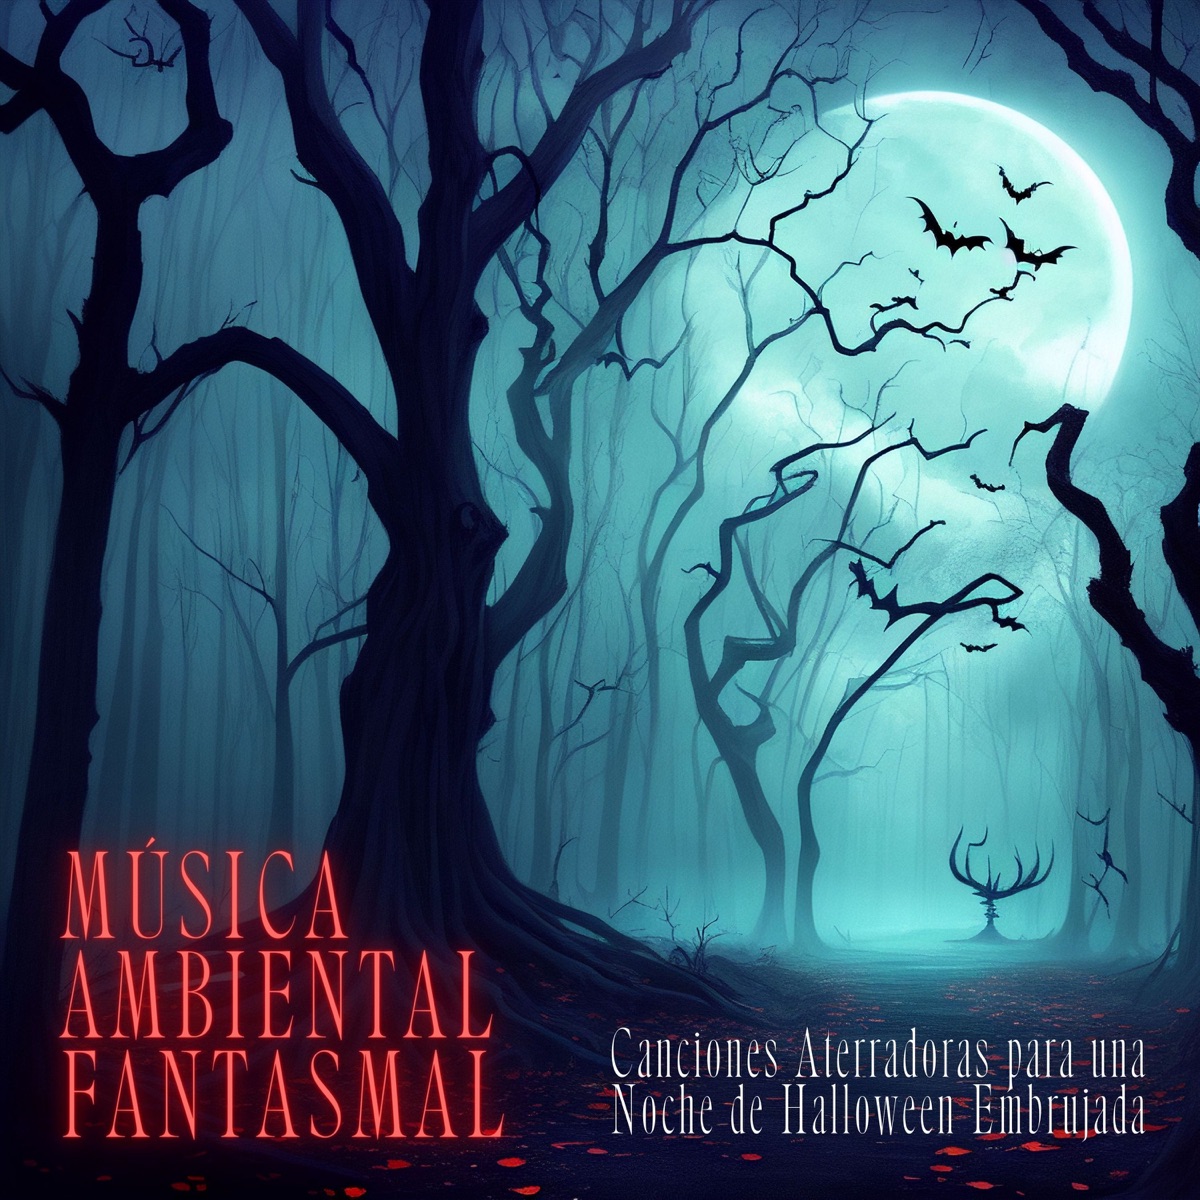 Música Ambiental Fantasmal - Canciones Aterradoras para una Noche de  Halloween Embrujada - Album by La Casa de los Horrores - Apple Music